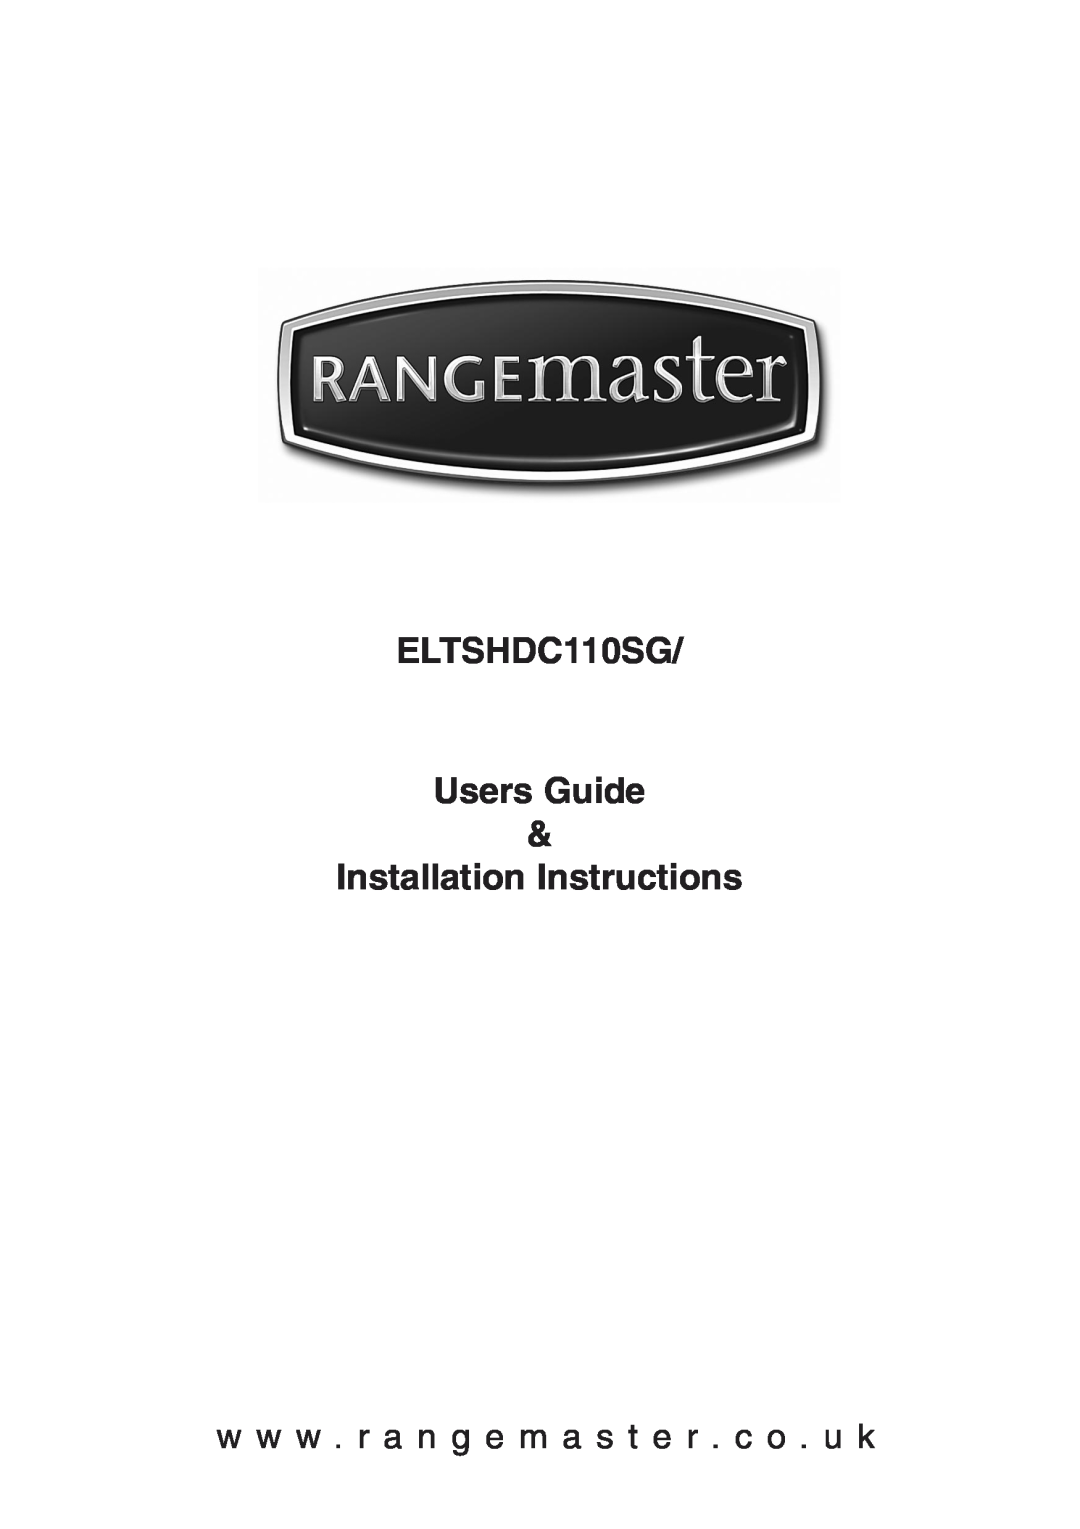 Rangemaster installation instructions ELTSHDC110SG Users Guide, Installation Instructions 